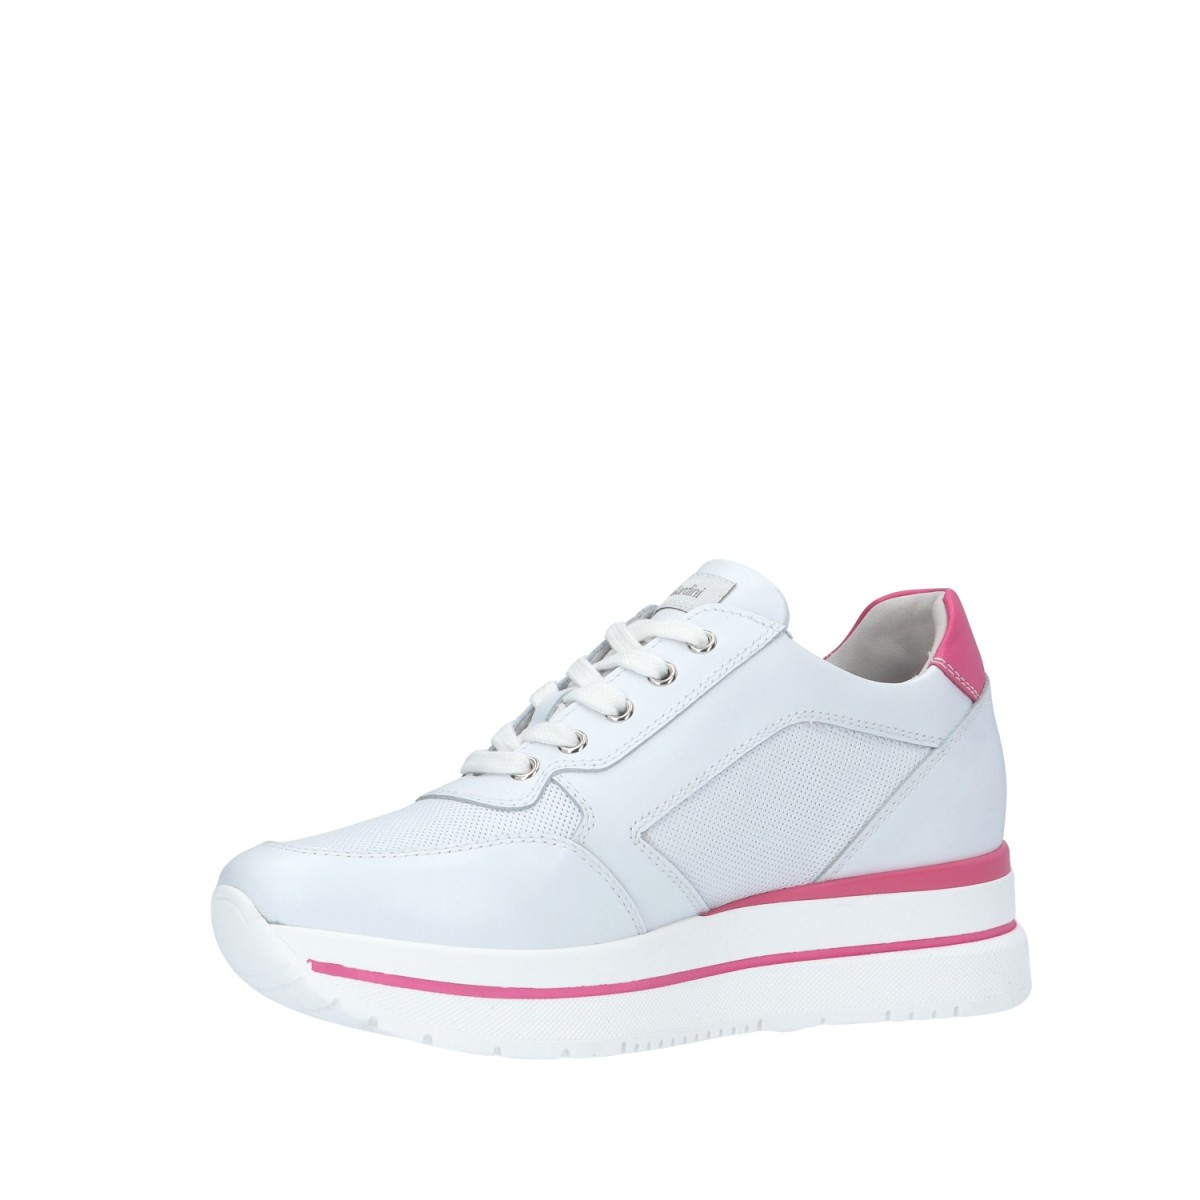 Nerogiardini Sneaker Bianco Gomma E409830D